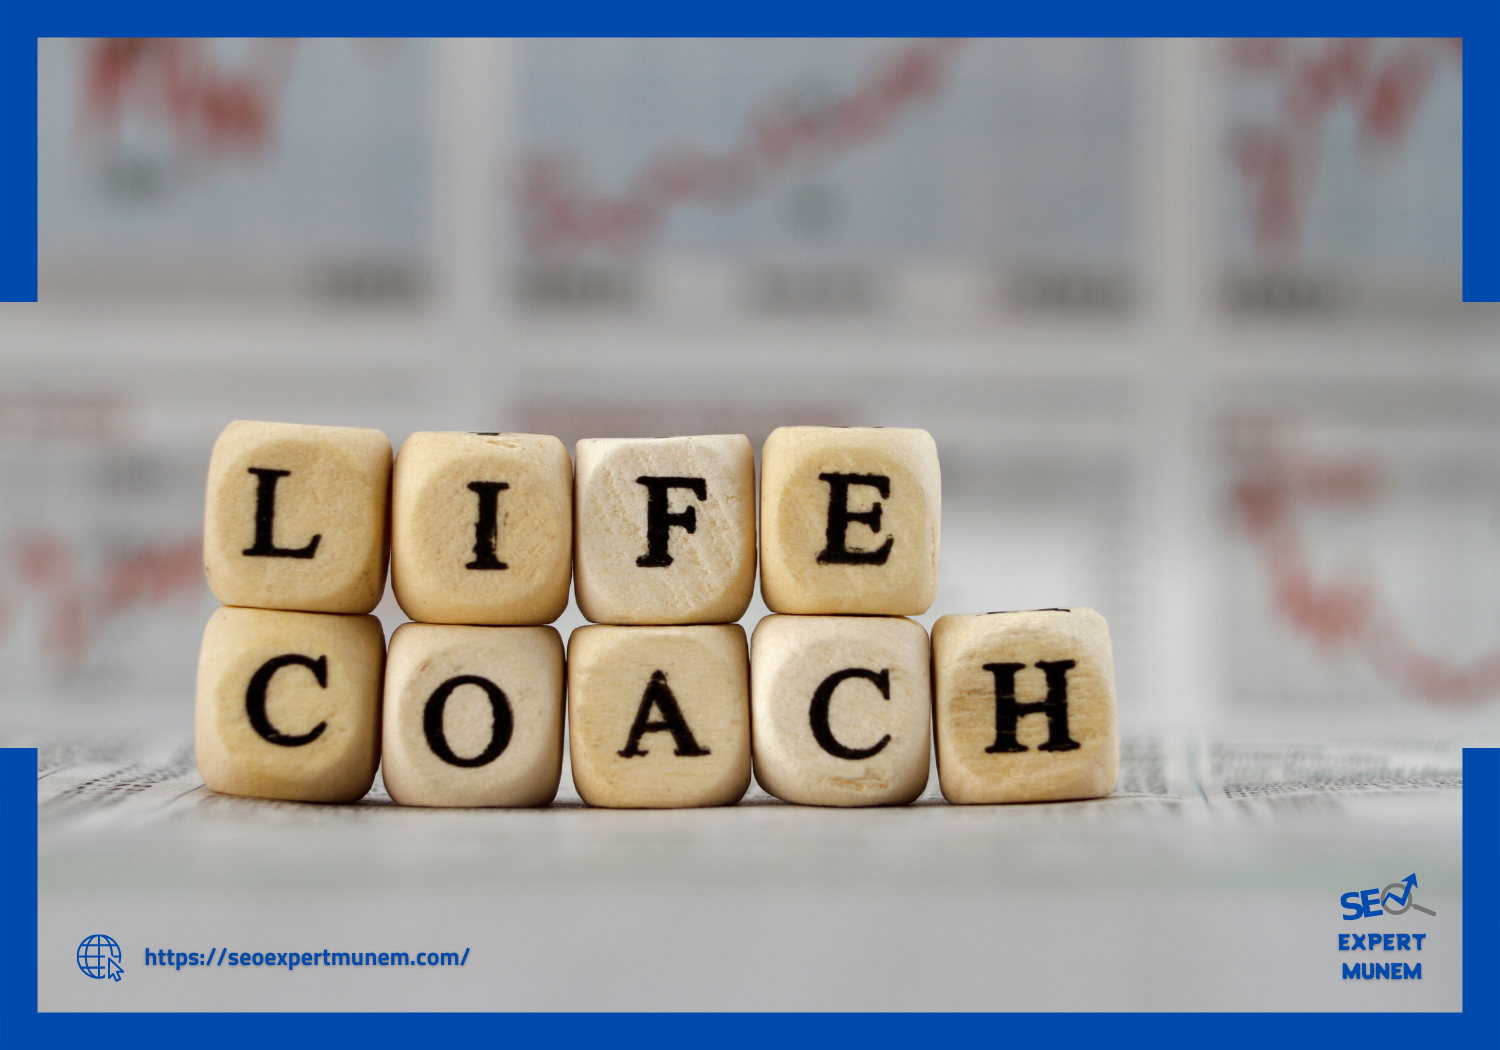 Life coaching